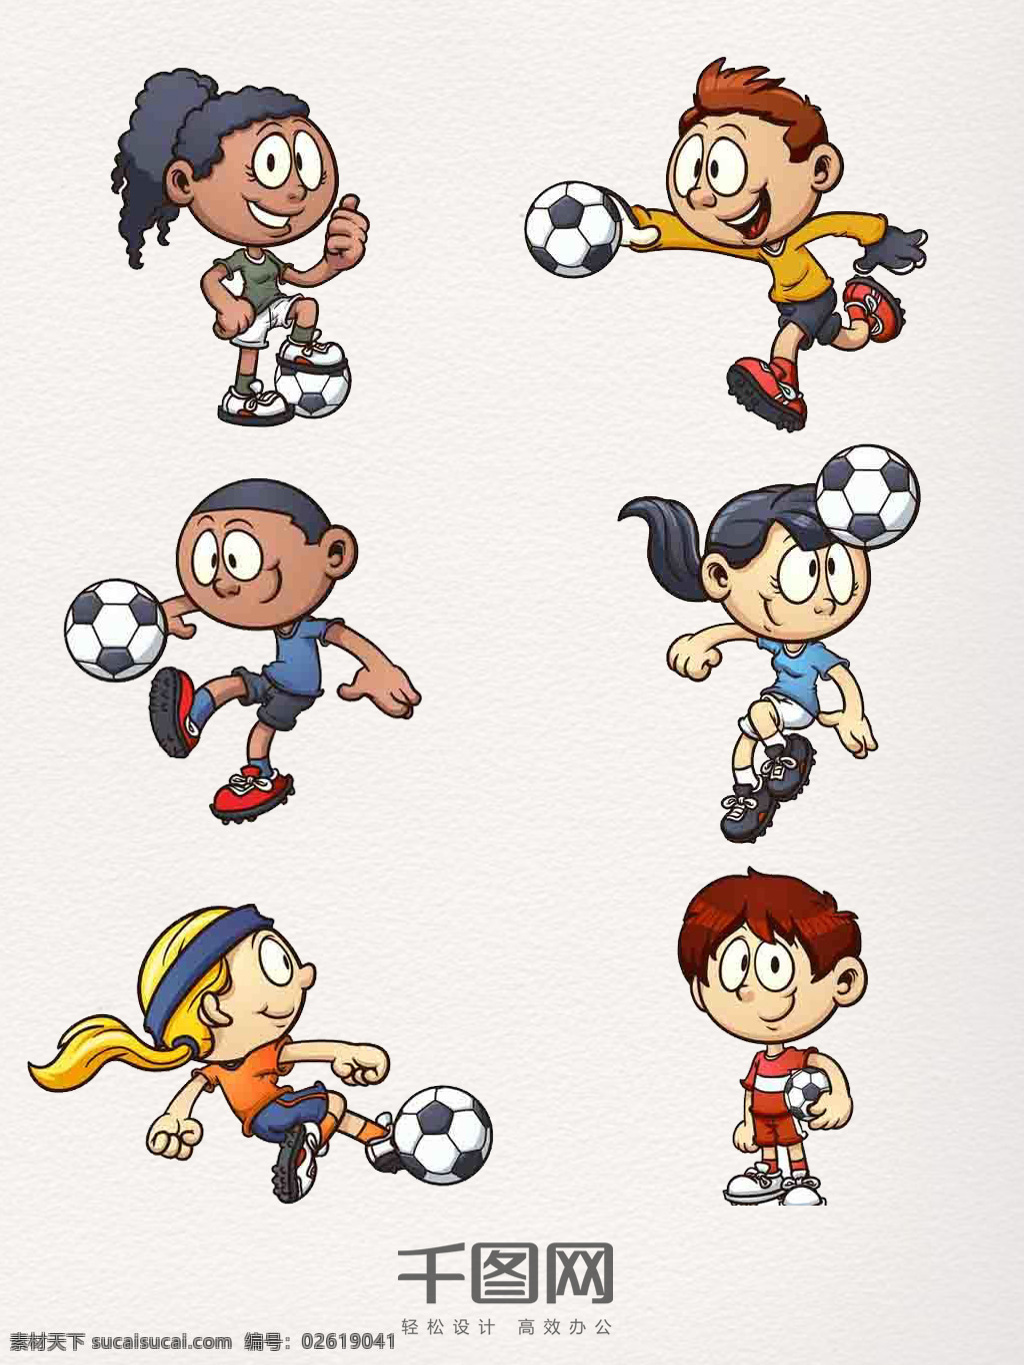 卡通 足球 运动 人物 元素 可爱 手绘 动画 插画 世界足球日 体育运动 奥运会 彩色 创意